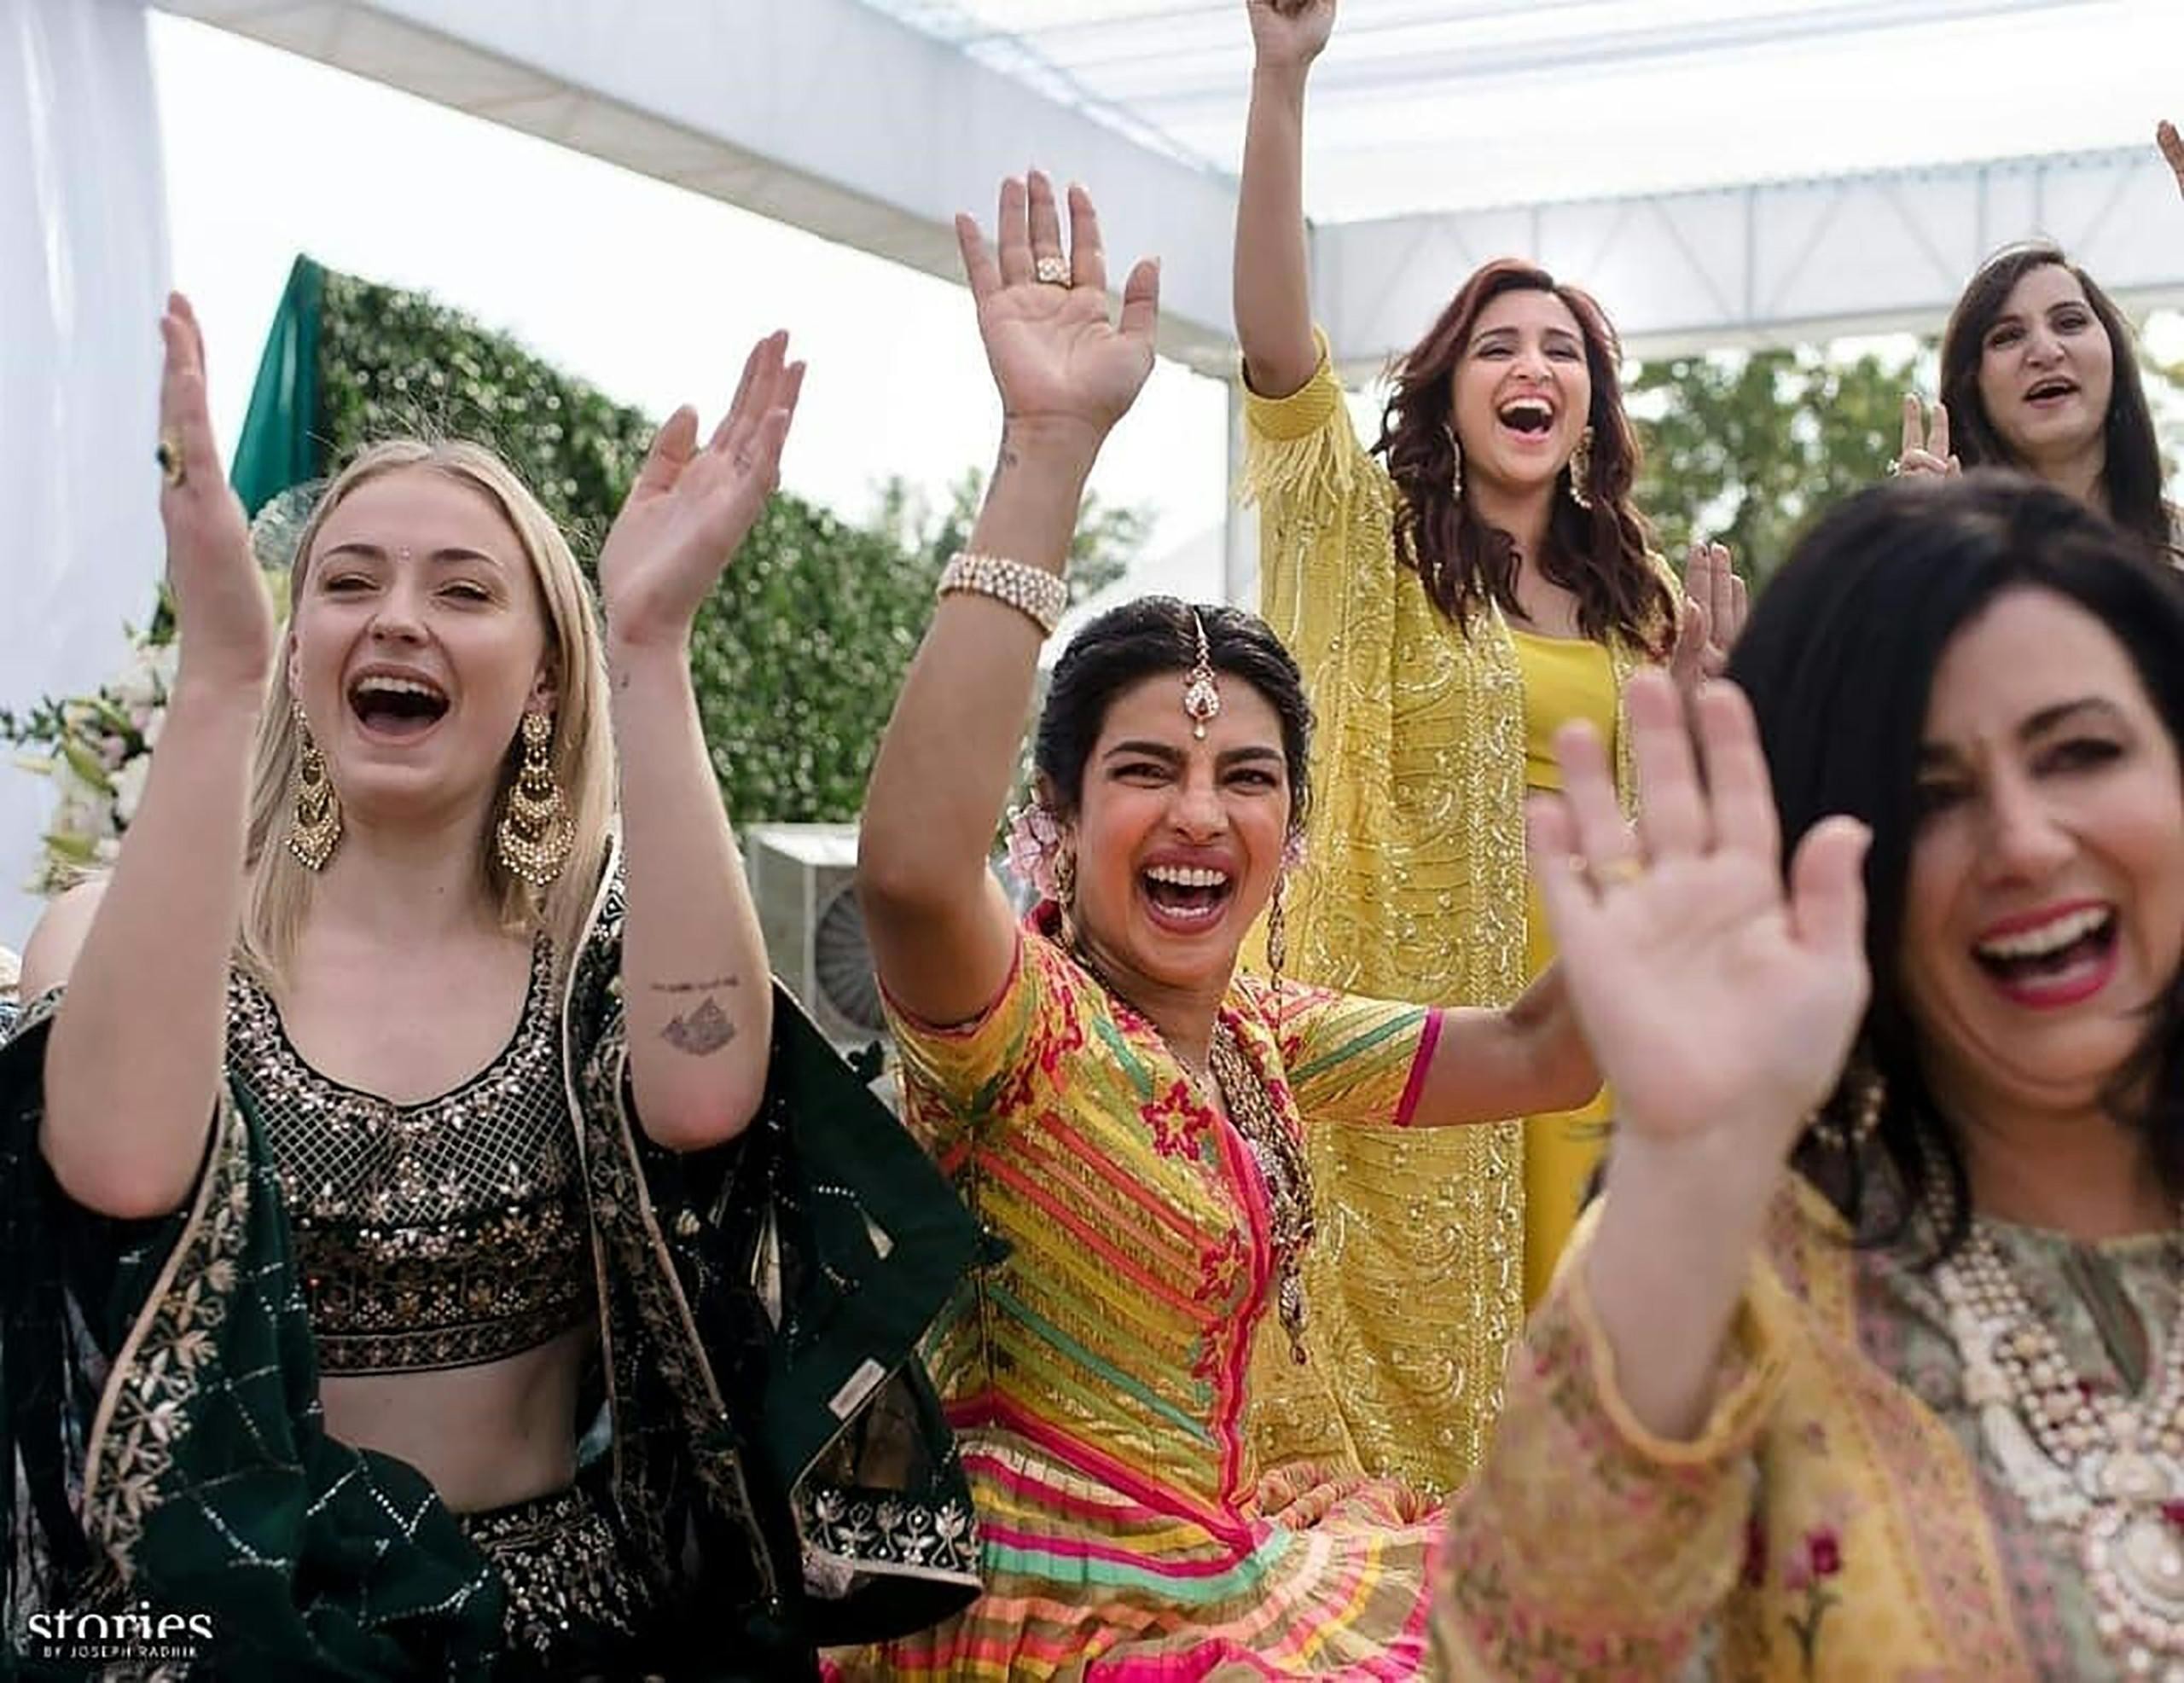 بريانكا في حفل زفافها.jpg